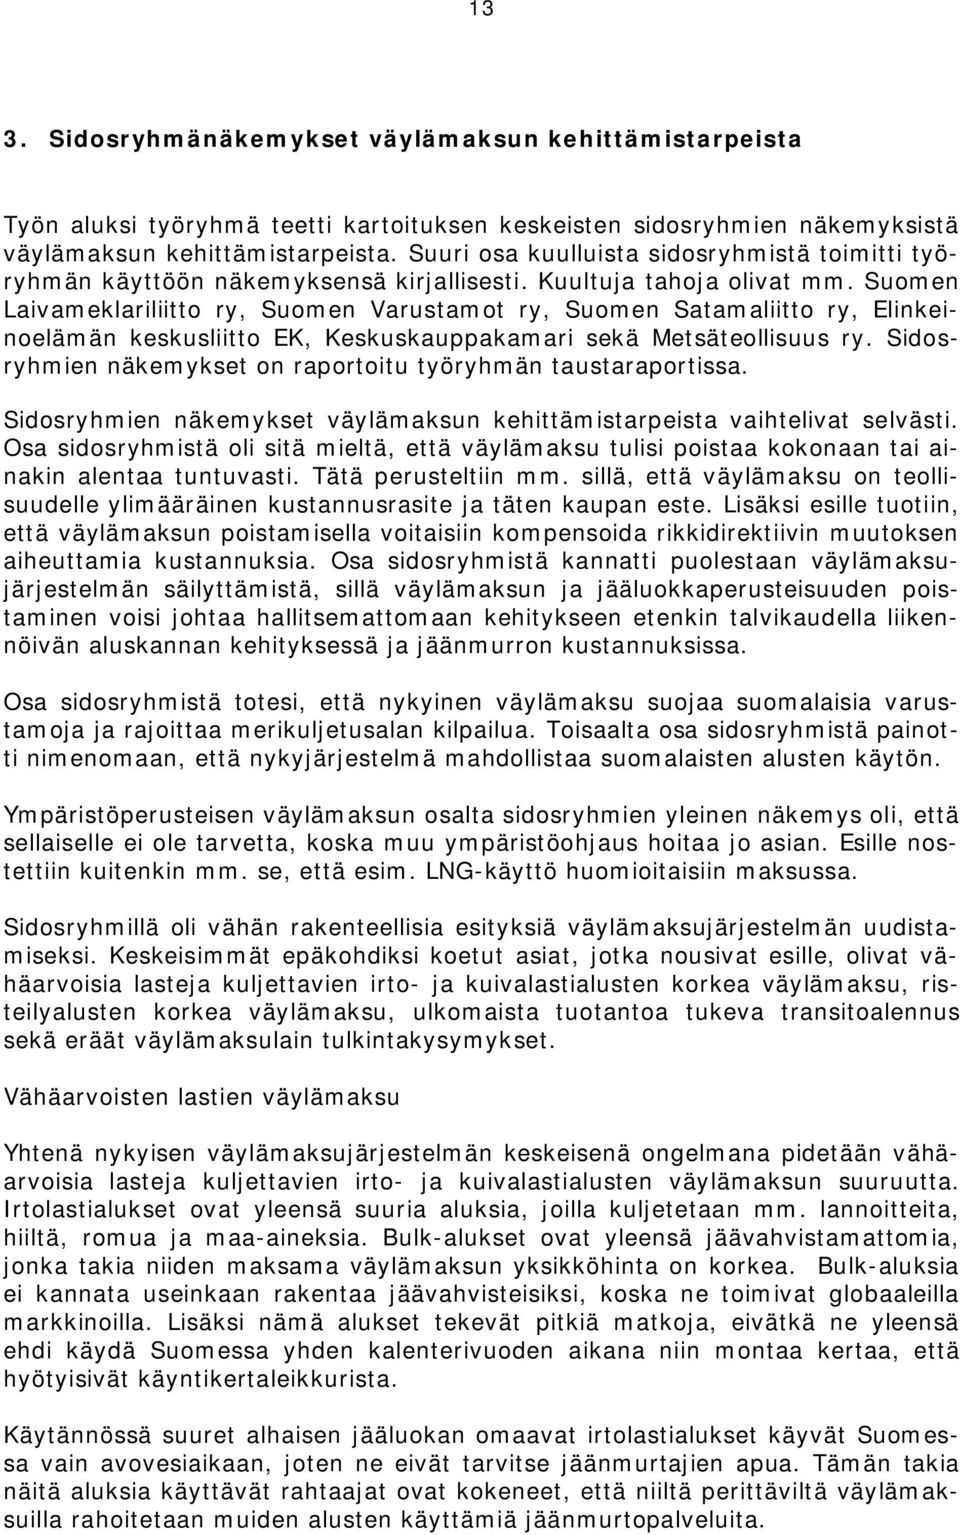 Suomen Laivameklariliitto ry, Suomen Varustamot ry, Suomen Satamaliitto ry, Elinkeinoelämän keskusliitto EK, Keskuskauppakamari sekä Metsäteollisuus ry.